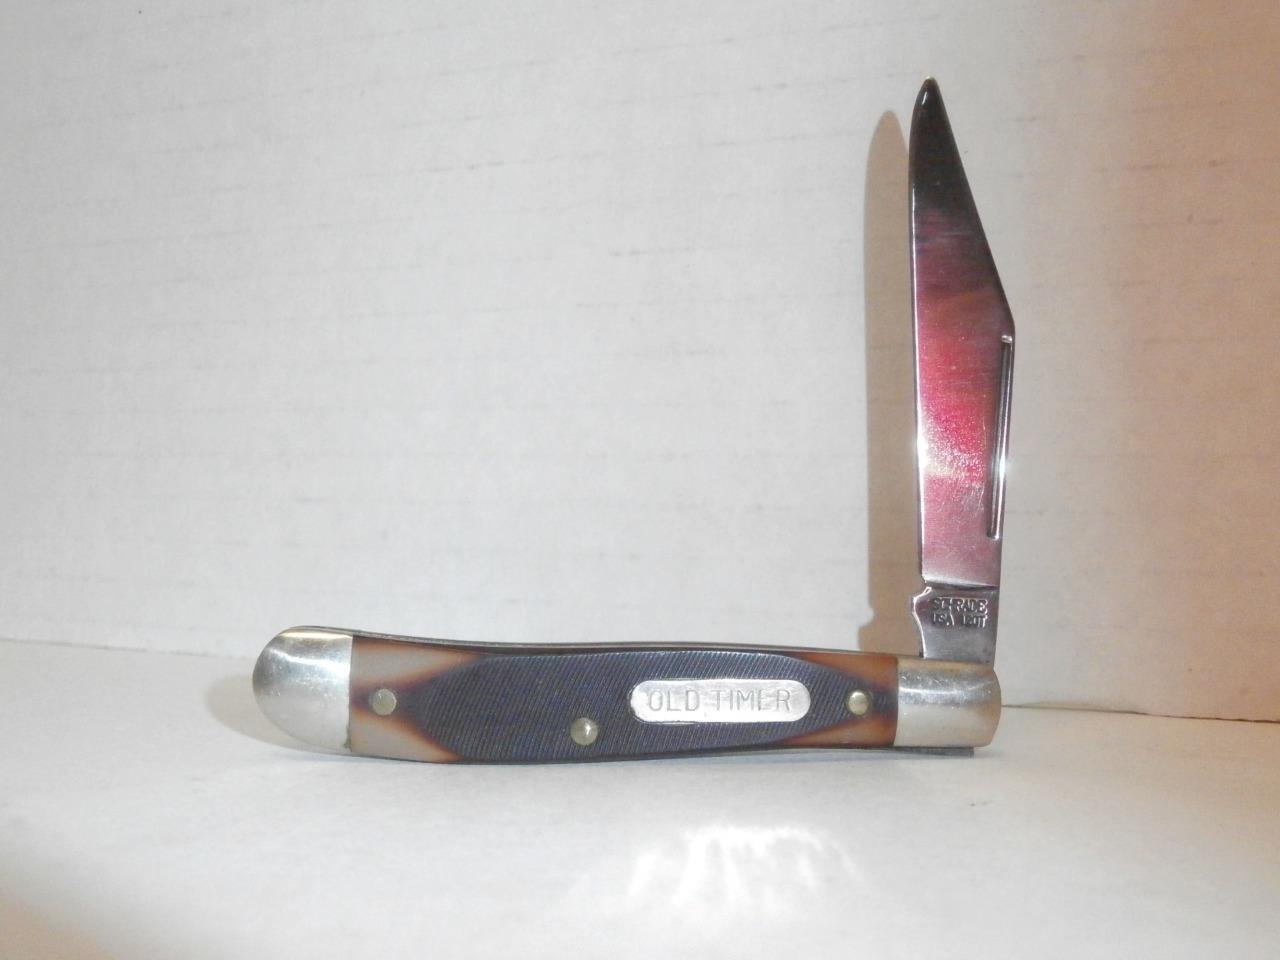 VINTAGE SCHRADE 120 T OLD TIMER POCKET KNIFE, MINT